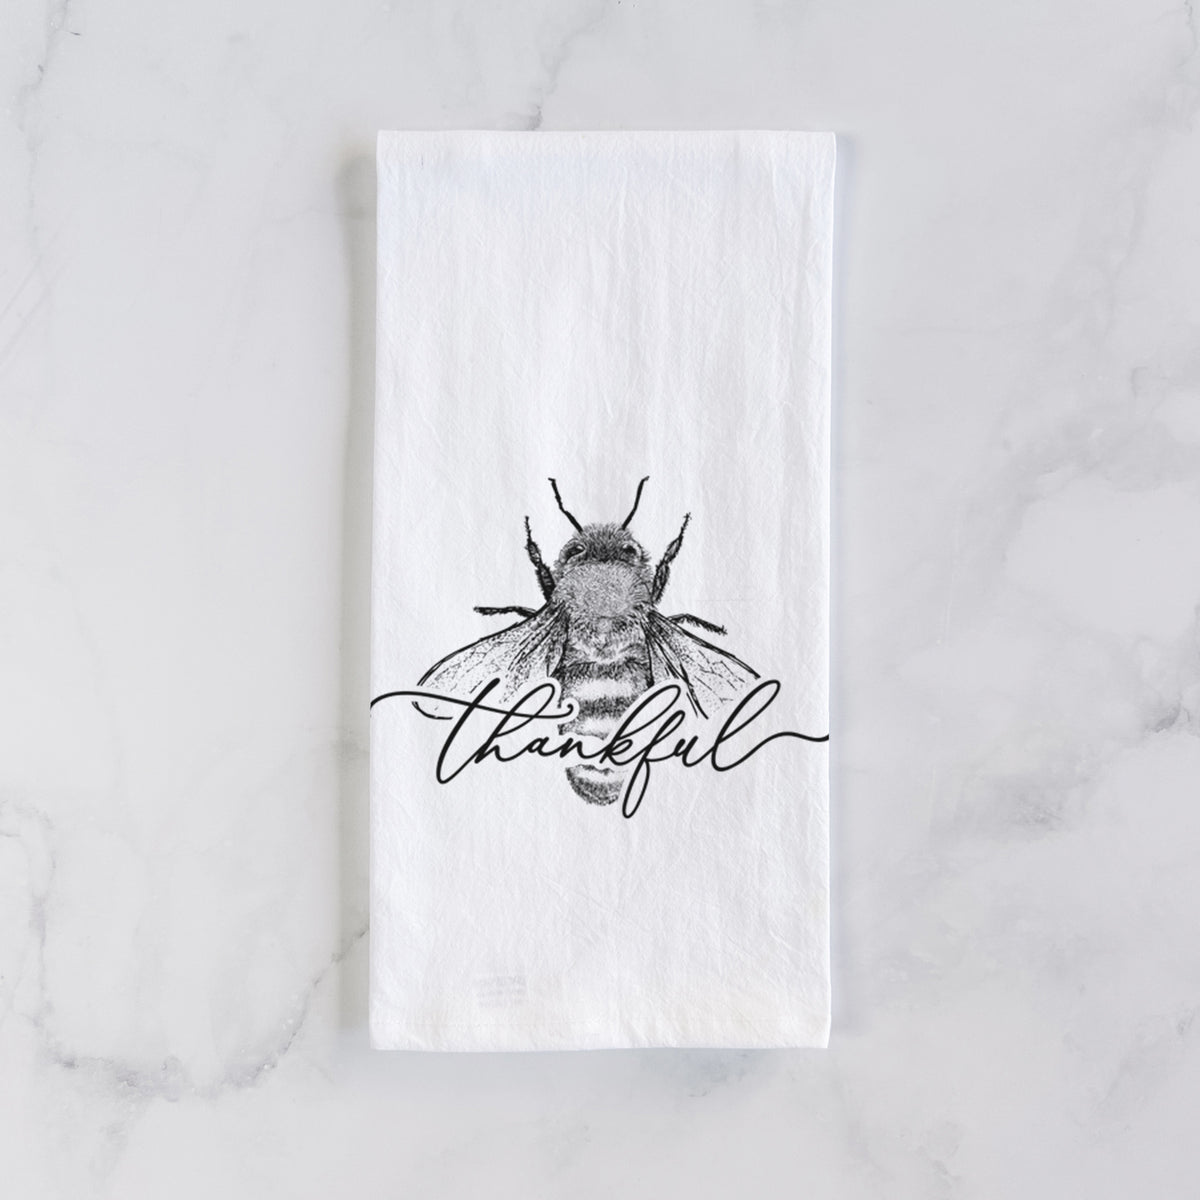 Bee Thankful Tea Towel